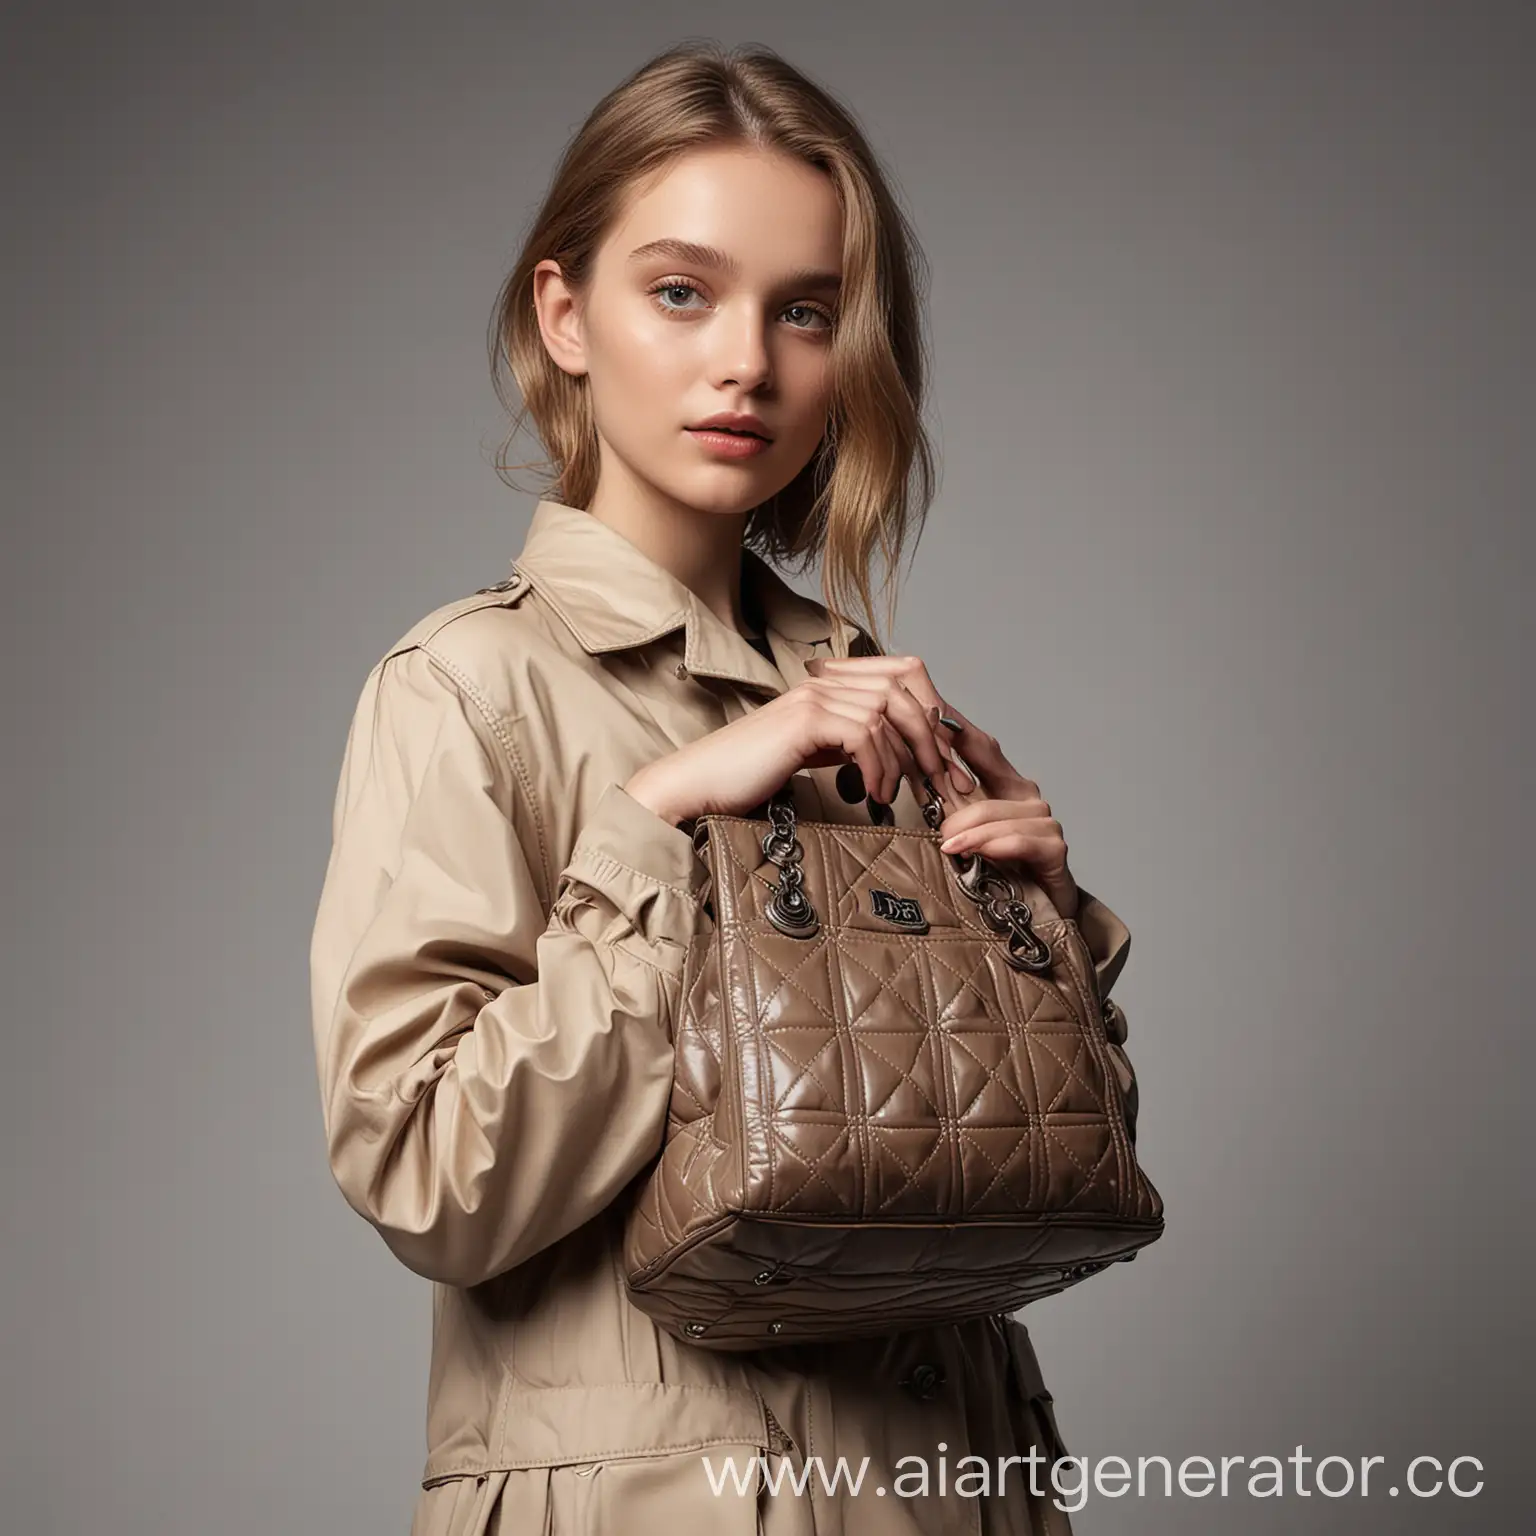 фотосессия девушки с сумкой в руках на фотостудии для премиального бренда сумок, наподобие DIOR